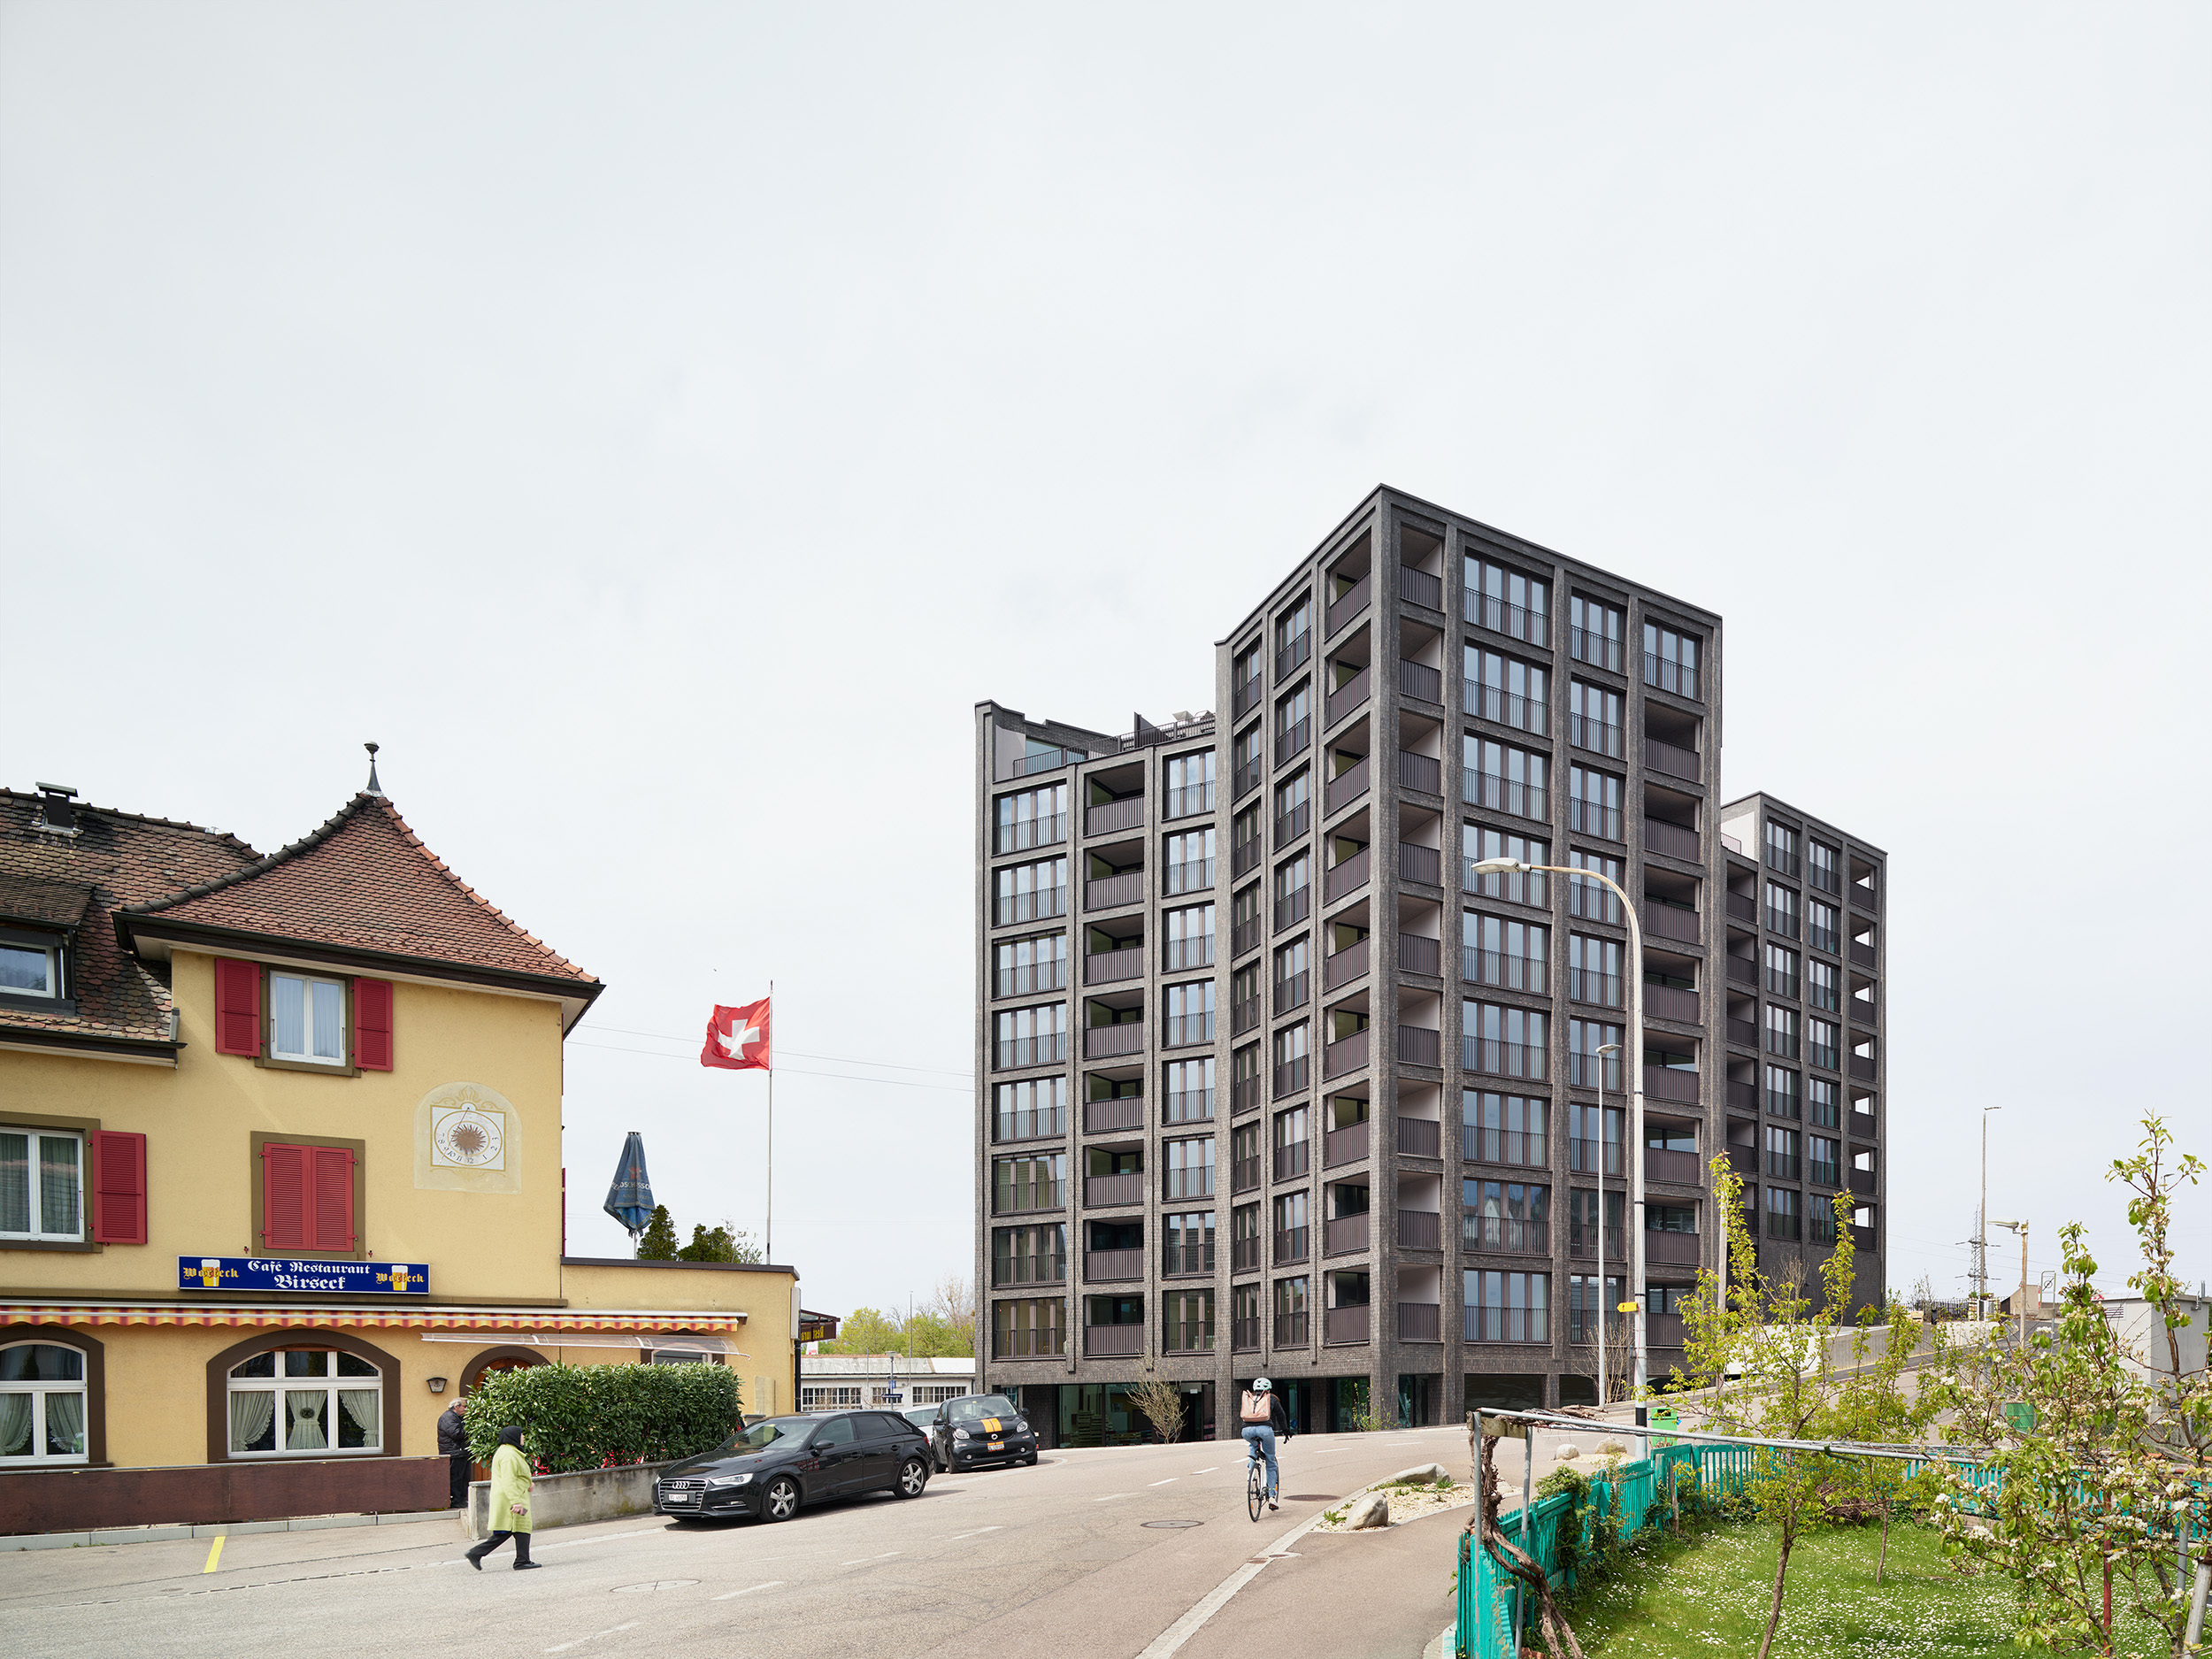 Exklusive Wohnqualität im Herzen von Münchenstein: Entdecken Sie dieses moderne Wohnhaus in erstklassiger Lage. Genießen Sie den Komfort und die hochwertige Ausstattung dieses Wohnhauses, das direkt am Bahnhof liegt. Mit kontrollierter Lüftung und einer